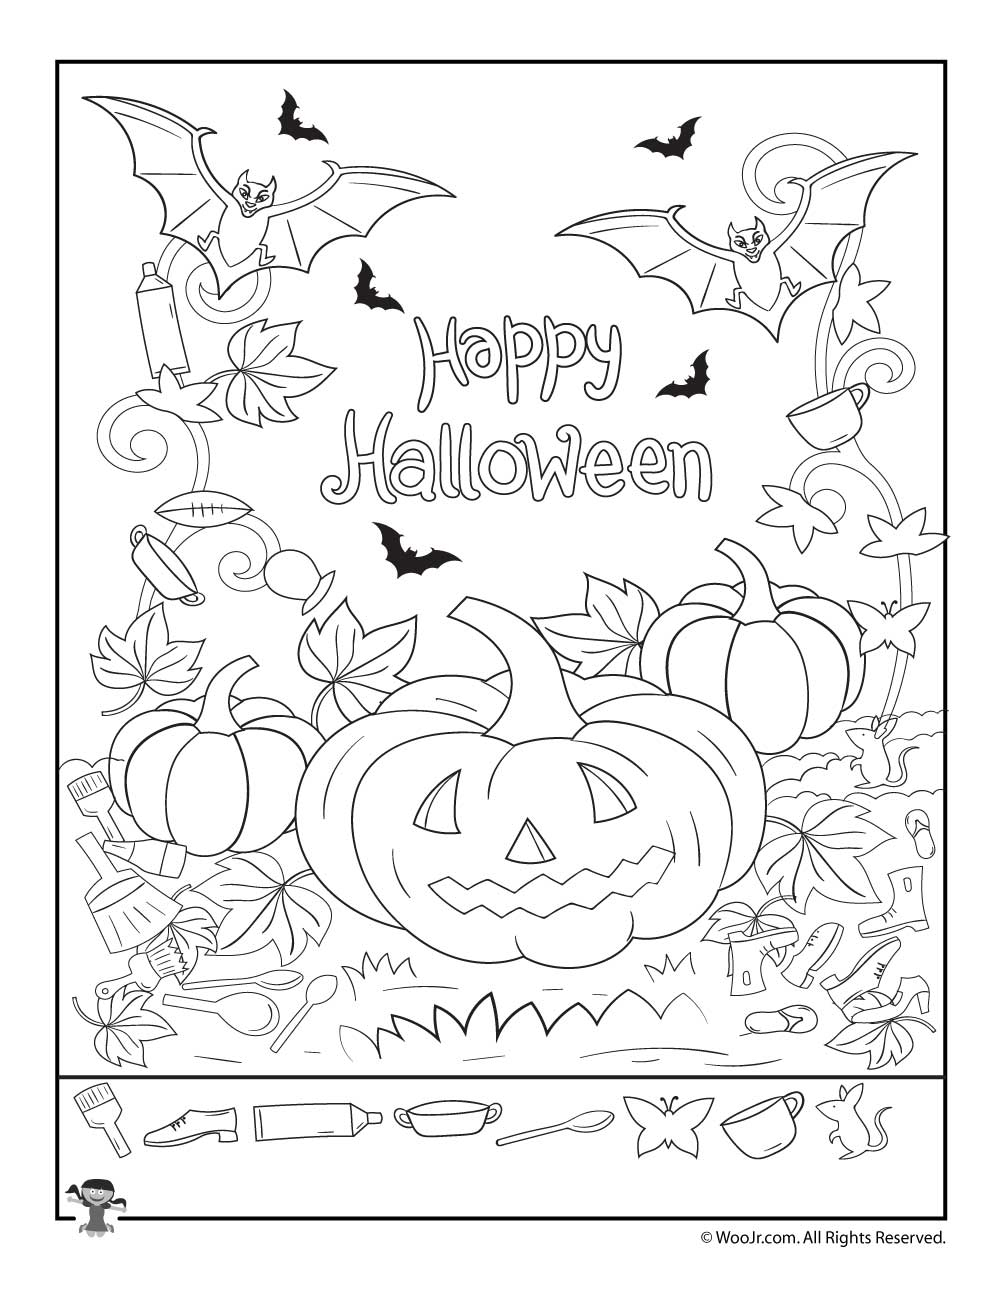 Happy Halloween Hidden Pictures Activity Page | Woo! Jr